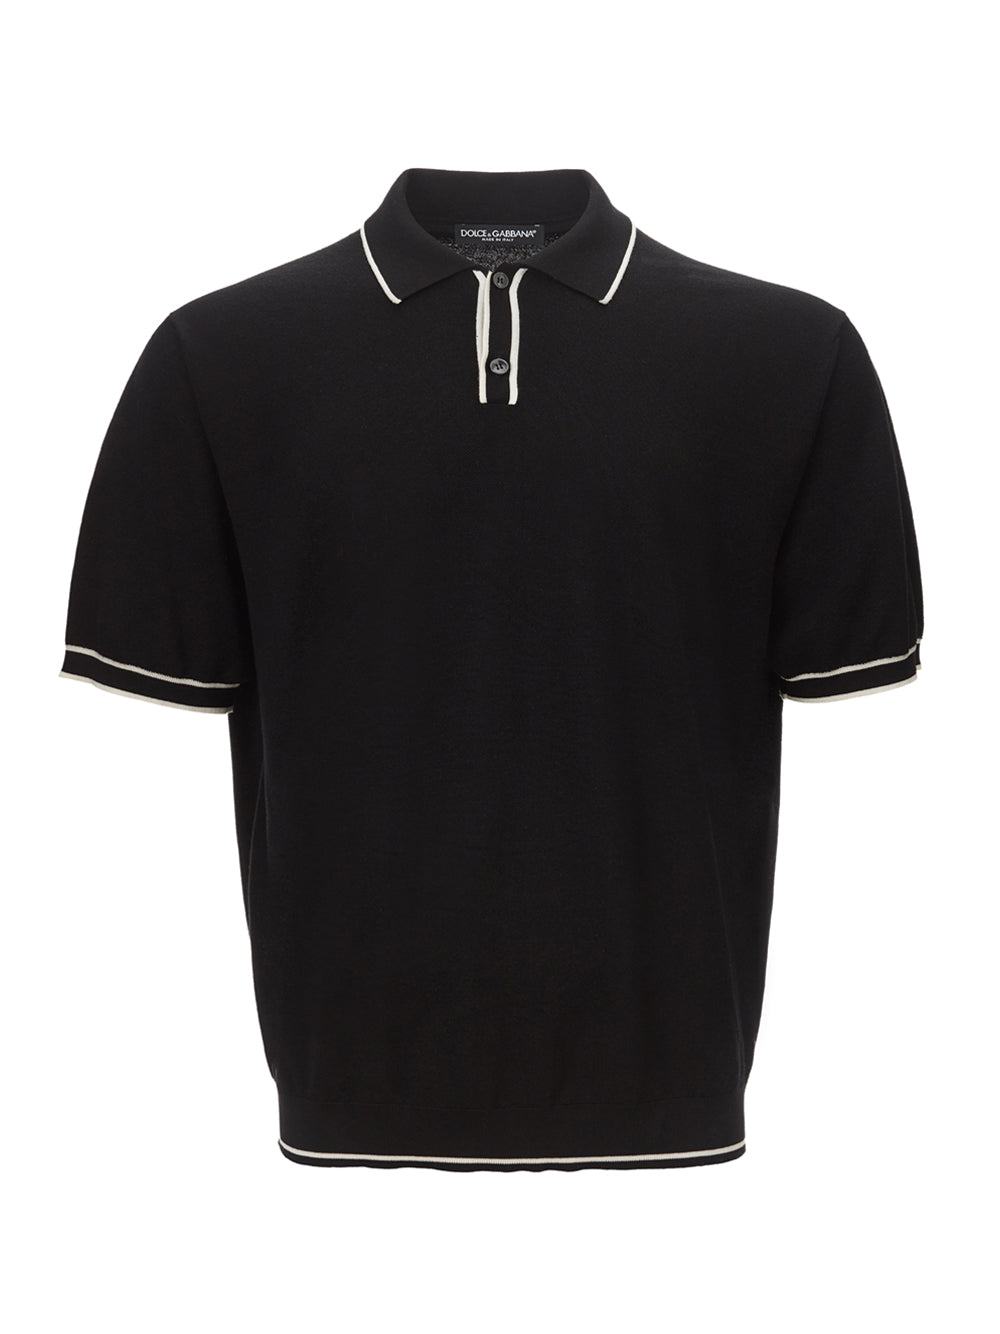 Dolce & Gabbana Black Knit Polo Shirt